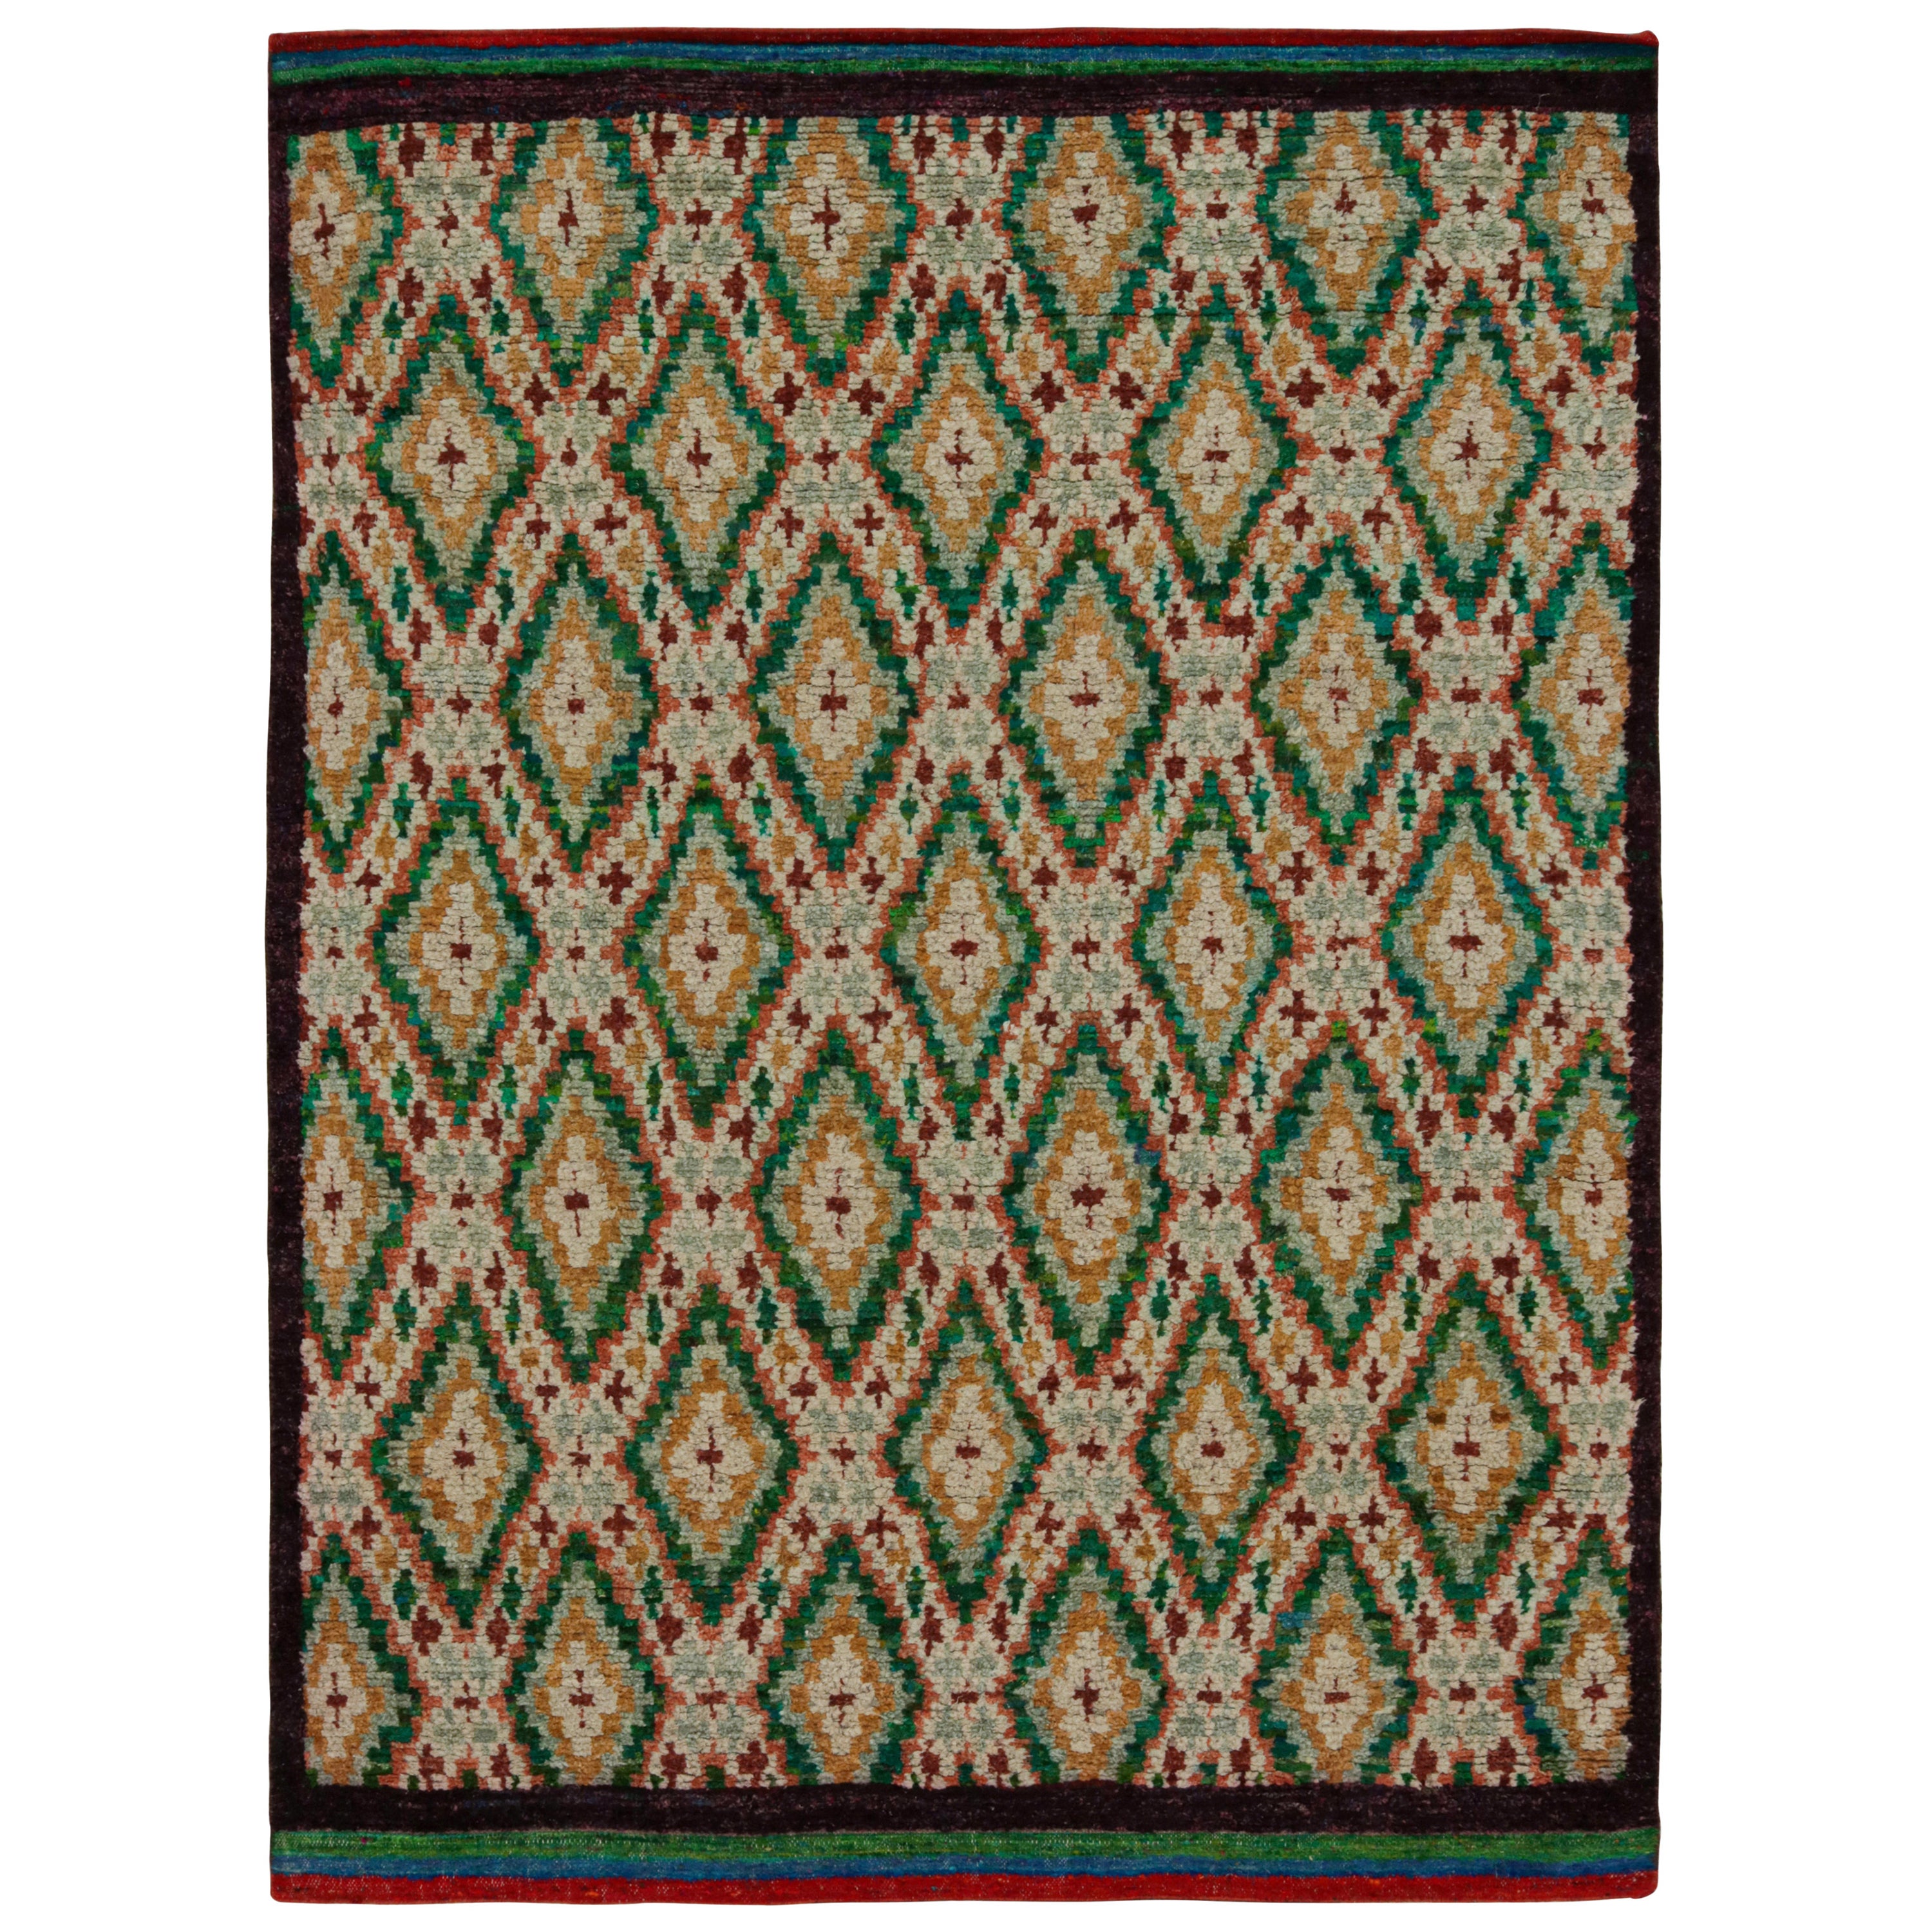 Rug & Kilim's Modernity Moroccan Style Rug in Green & Gold Geometric Patterns (tapis de style marocain moderne avec des motifs géométriques verts et dorés)